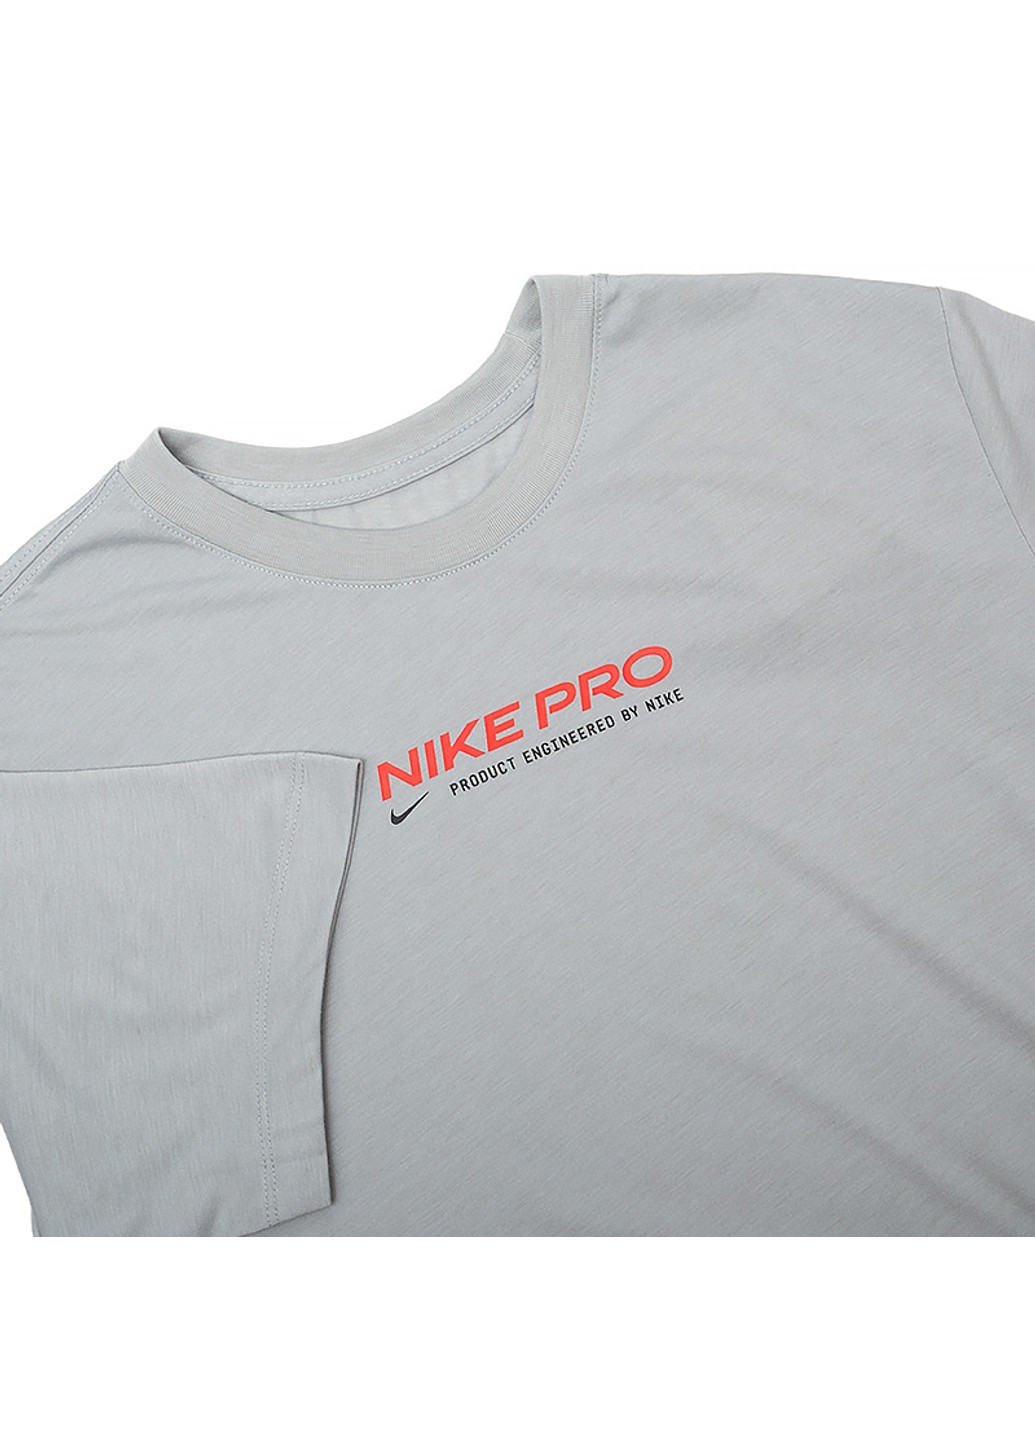 Біла футболка m nk df tee db nk pro 2 Nike